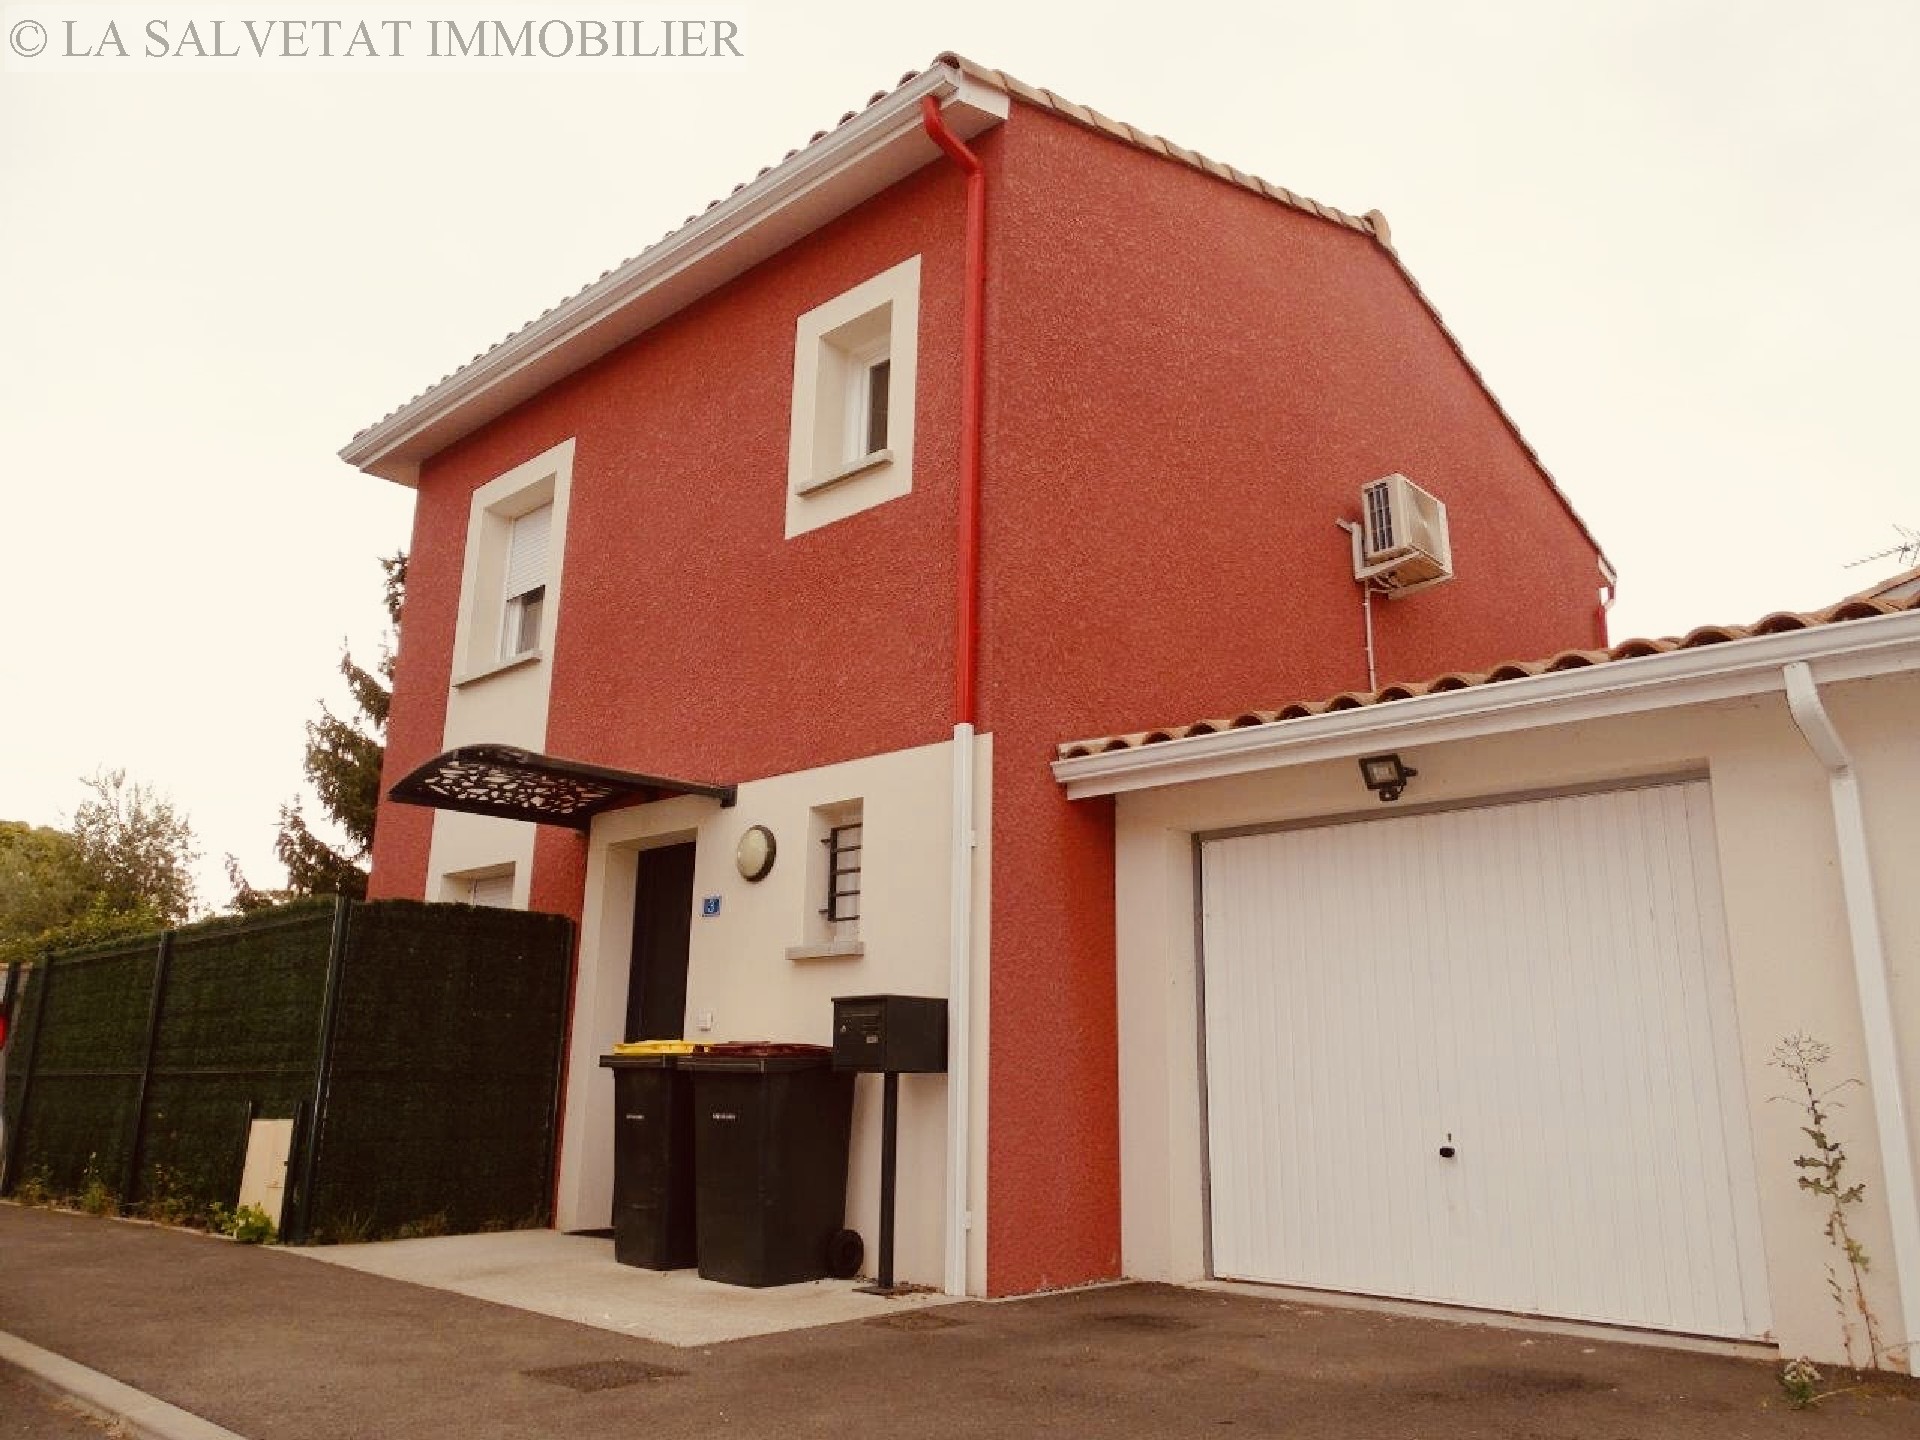 Vente maison-villa - FROUZINS<br>79 m², 4 pièces